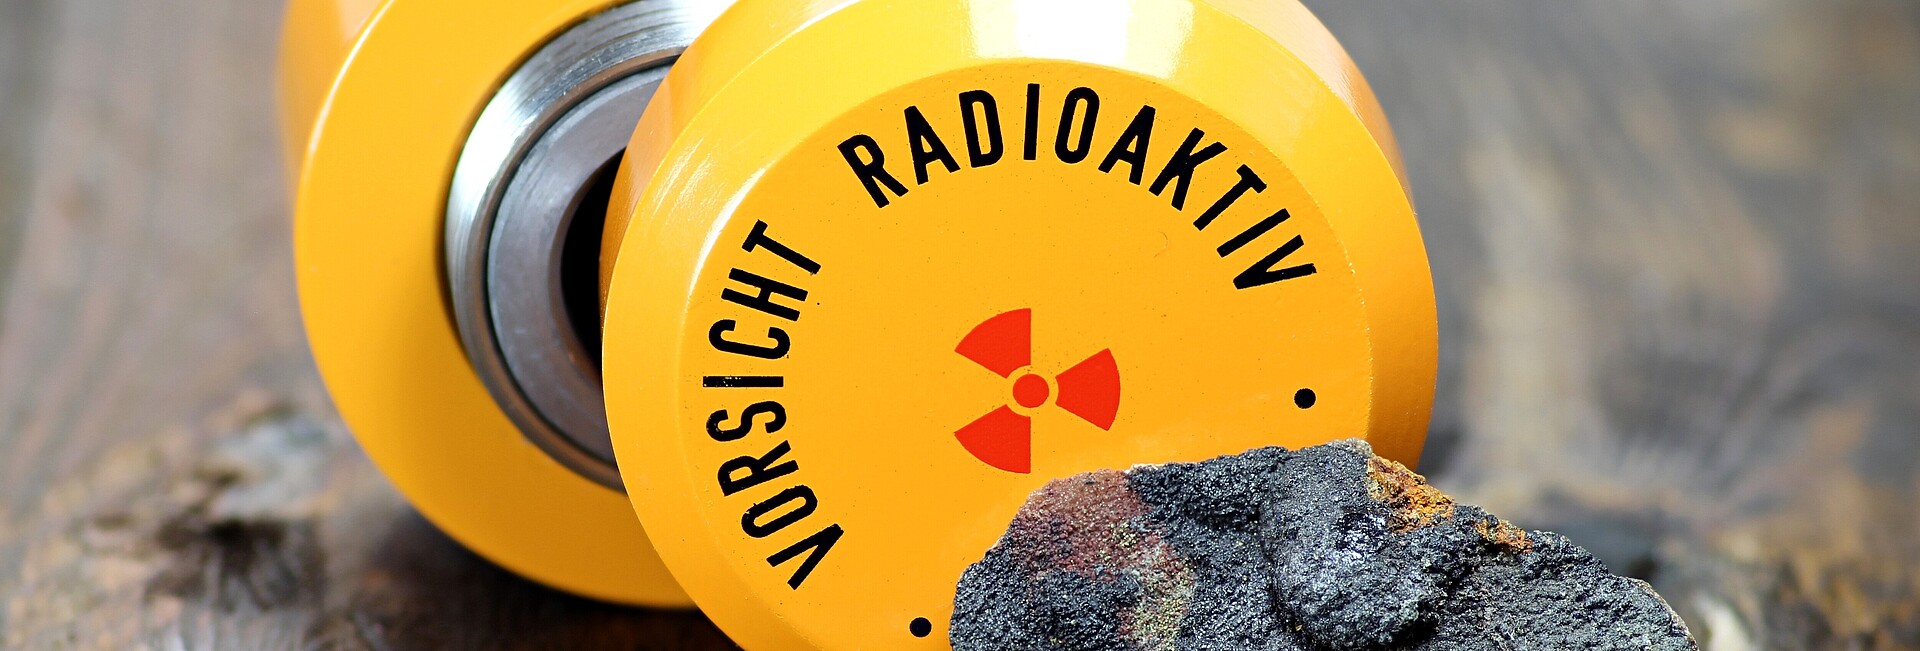 Symbolbild für Strahlenschutz mit der Aufschrift "Radioaktivität"